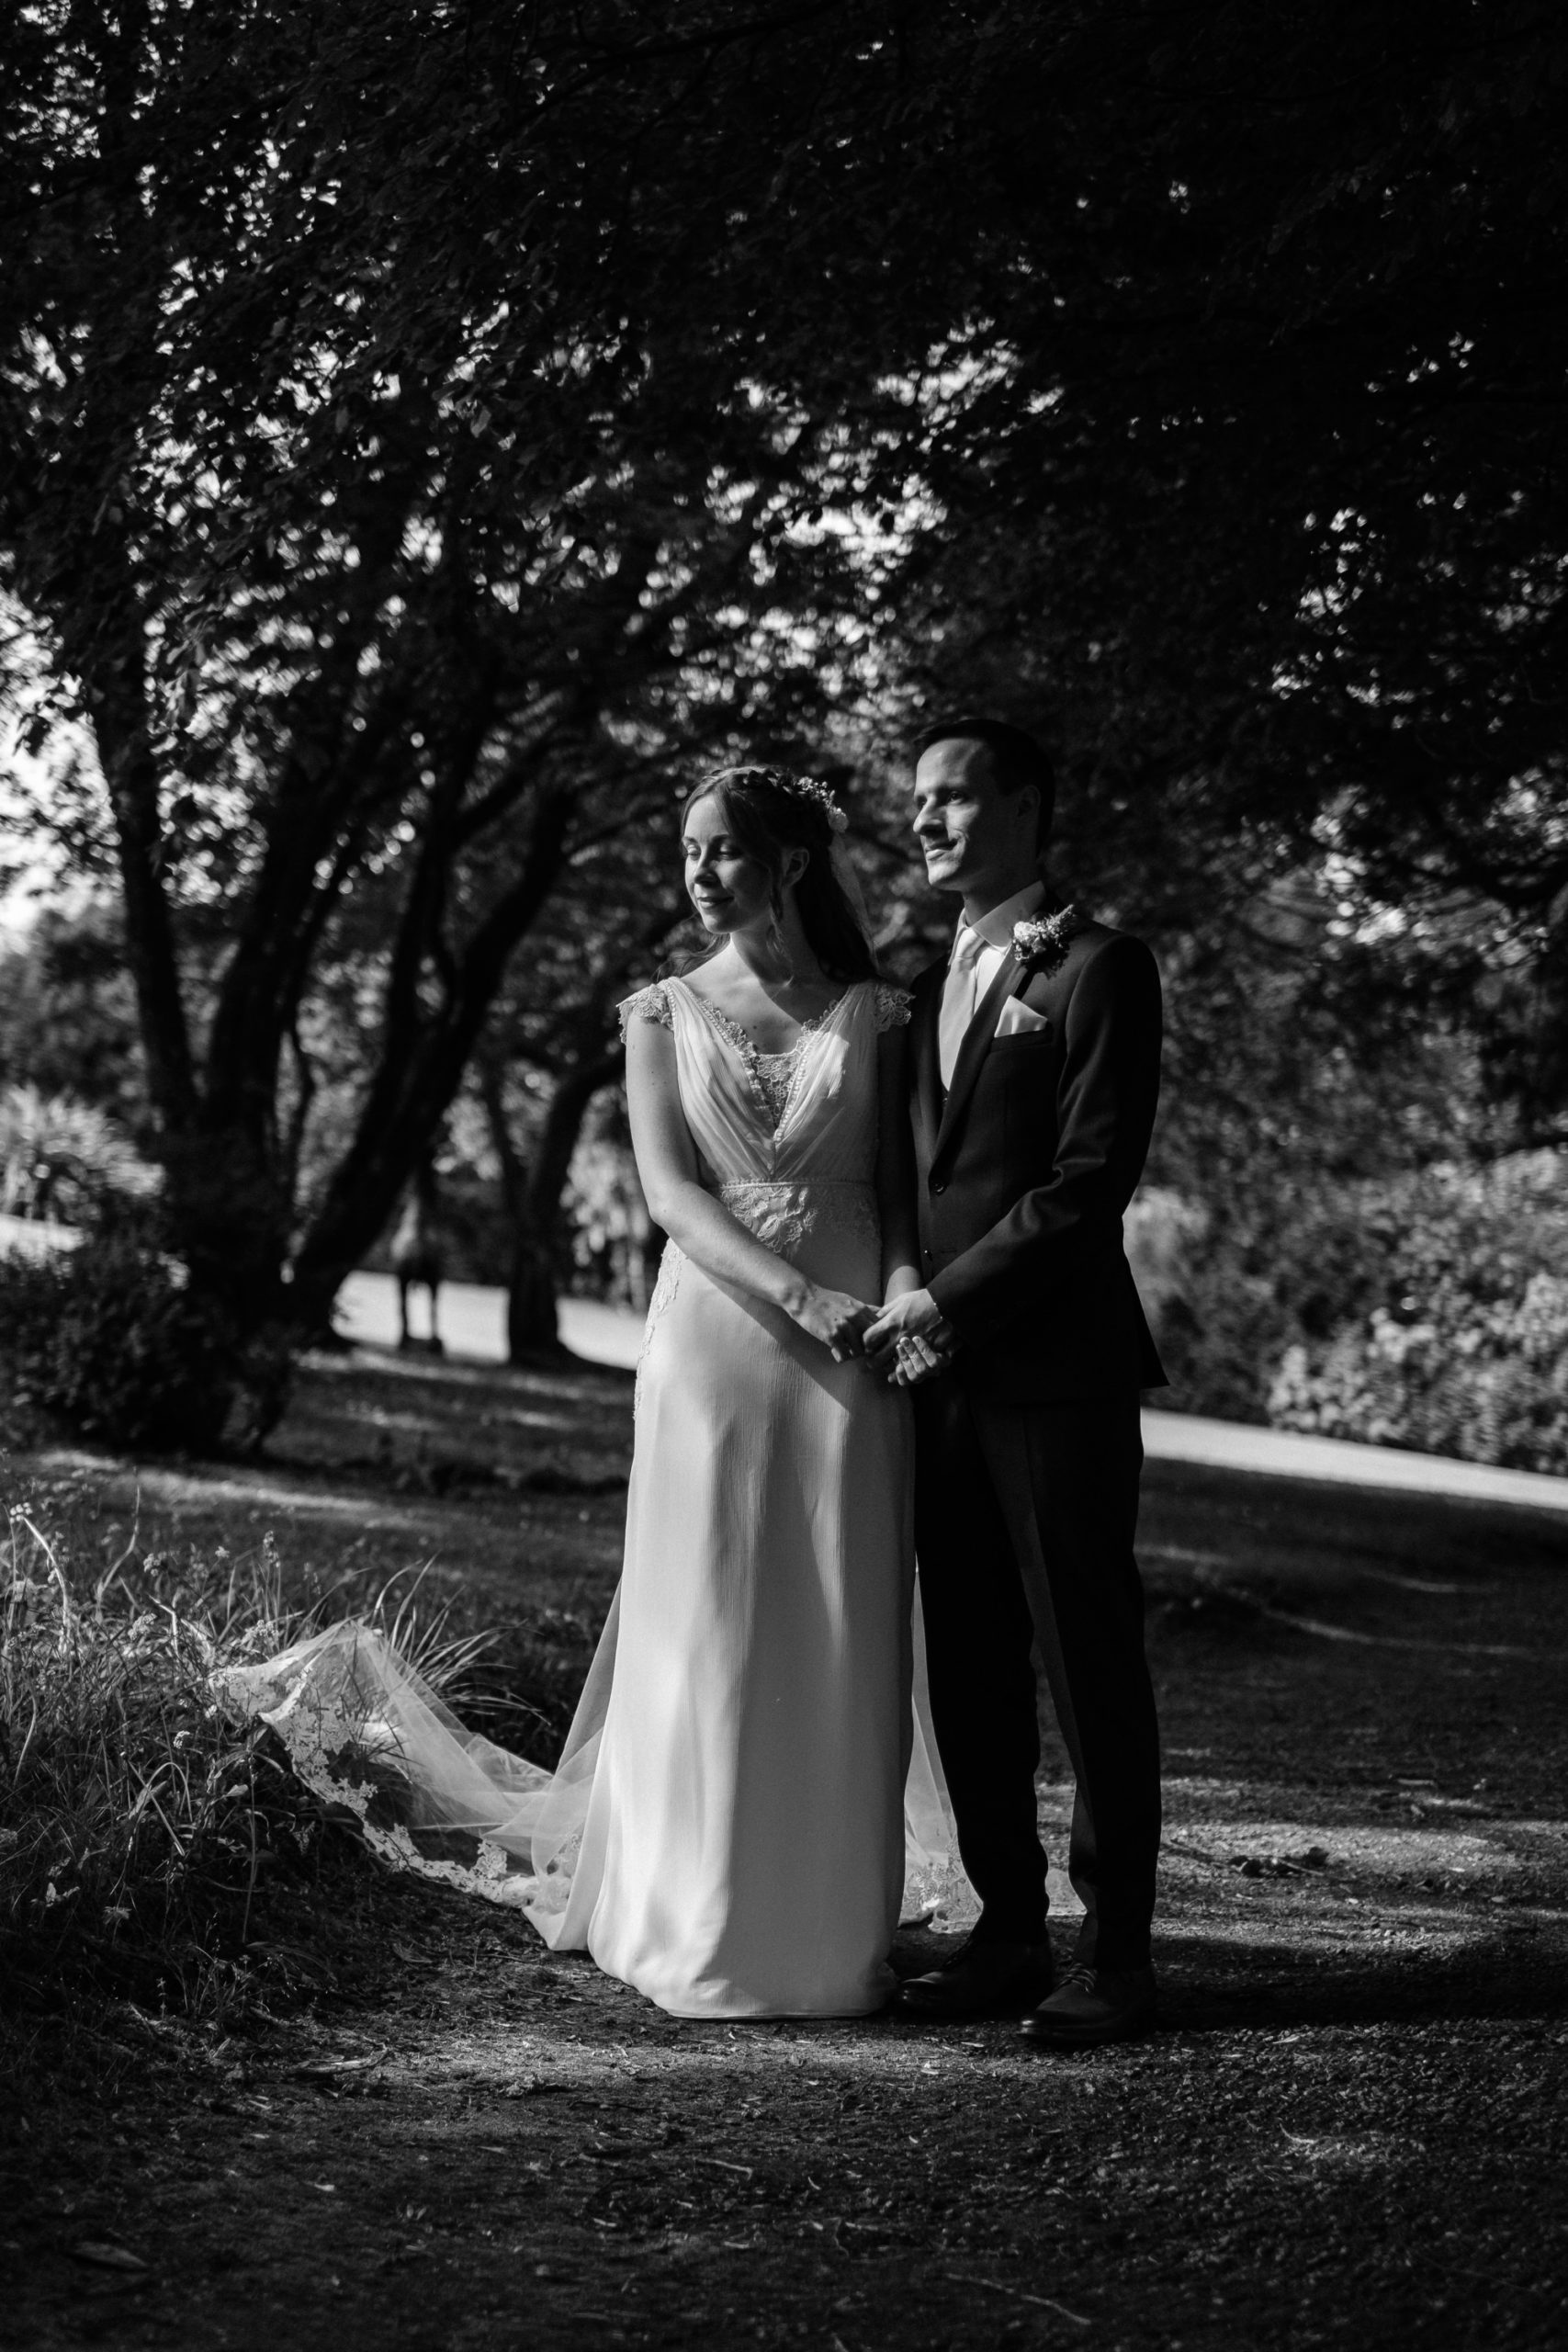 Wedding photography Northern Ireland